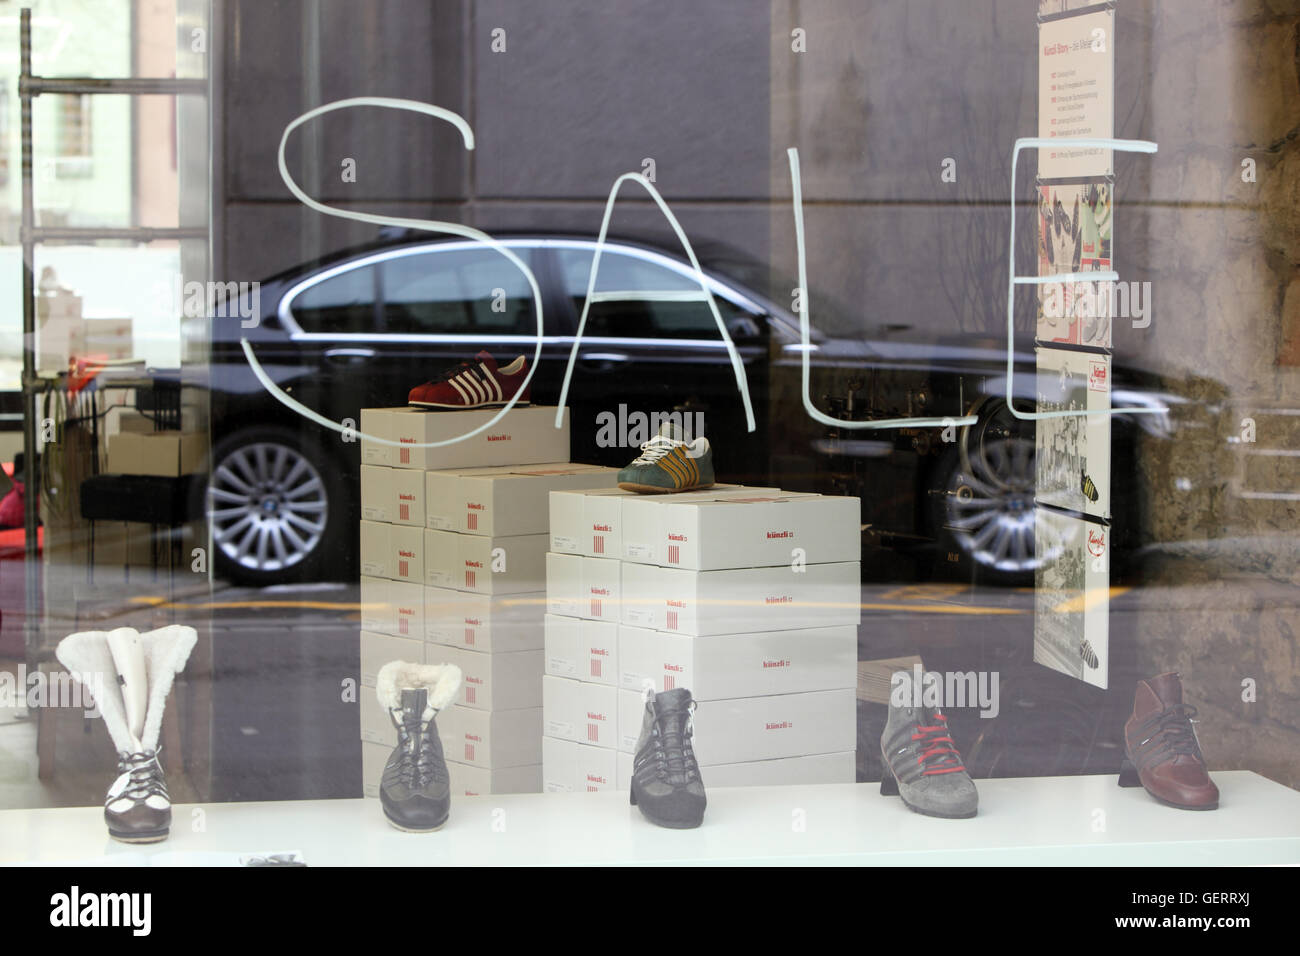 Zuerich, Suisse, la vente dans un magasin de chaussures Banque D'Images